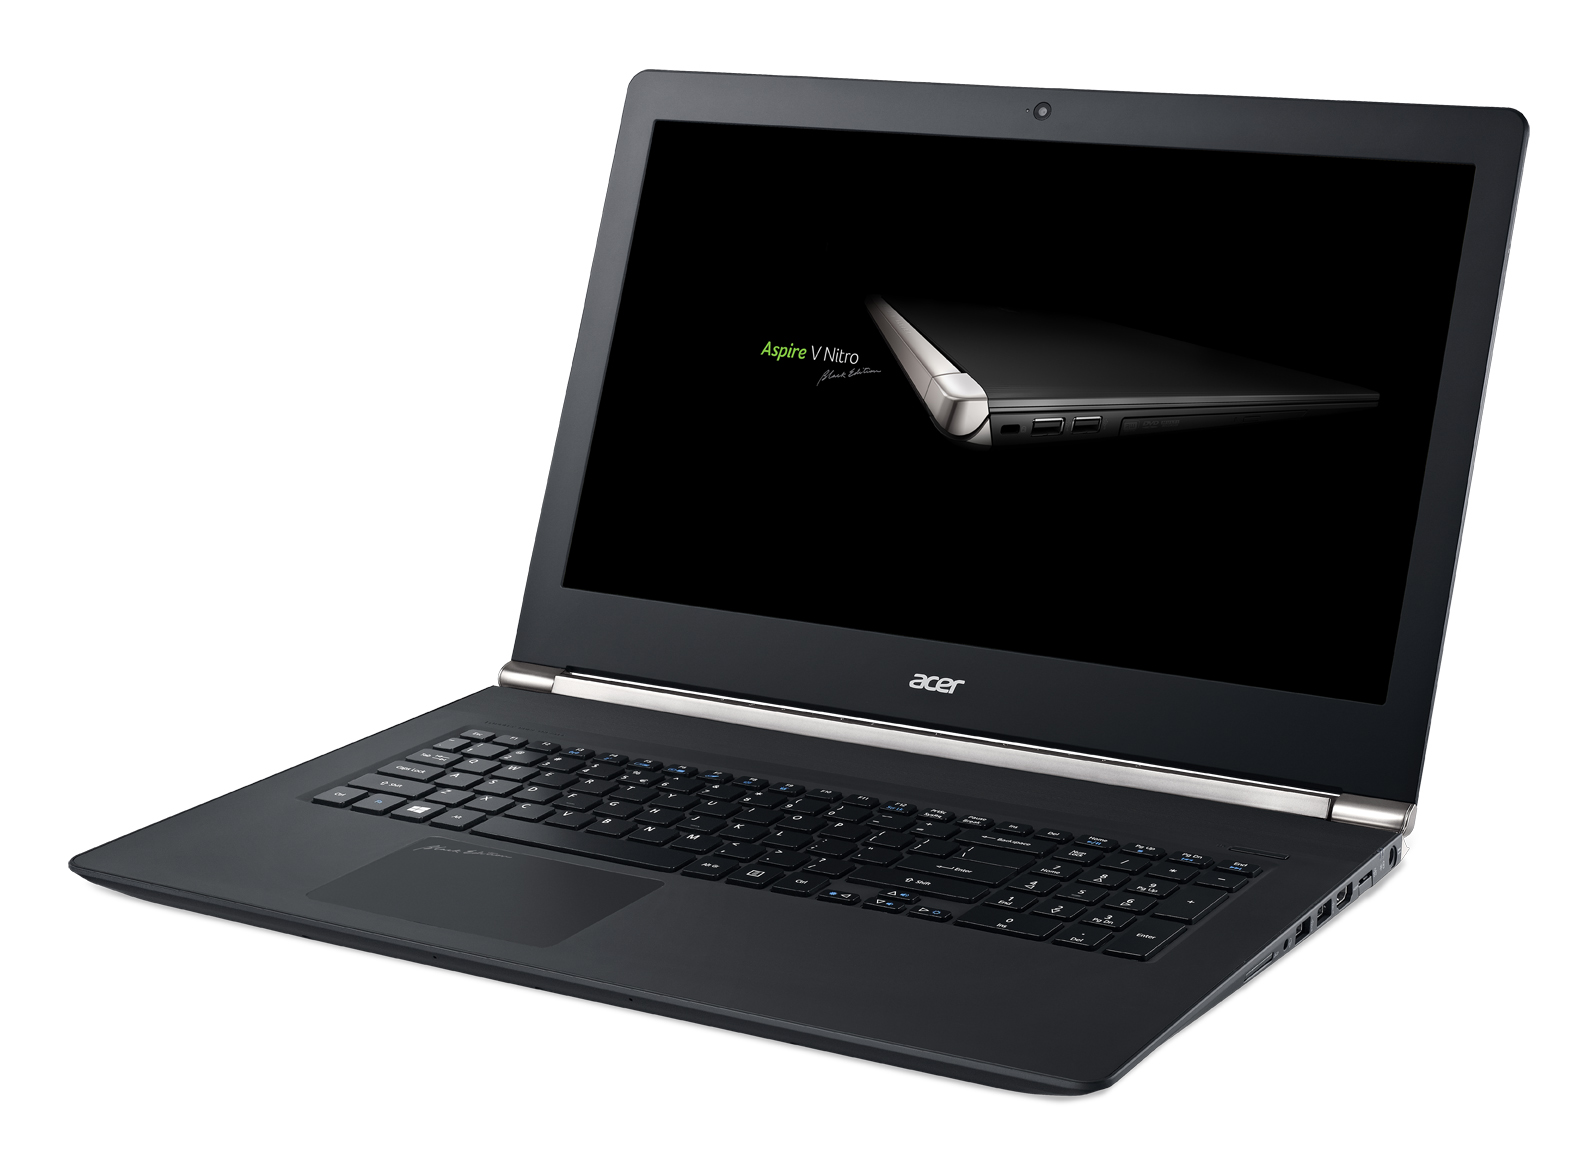 Kết quả hình ảnh cho Acer Aspire V 17 Nitro Black Edition